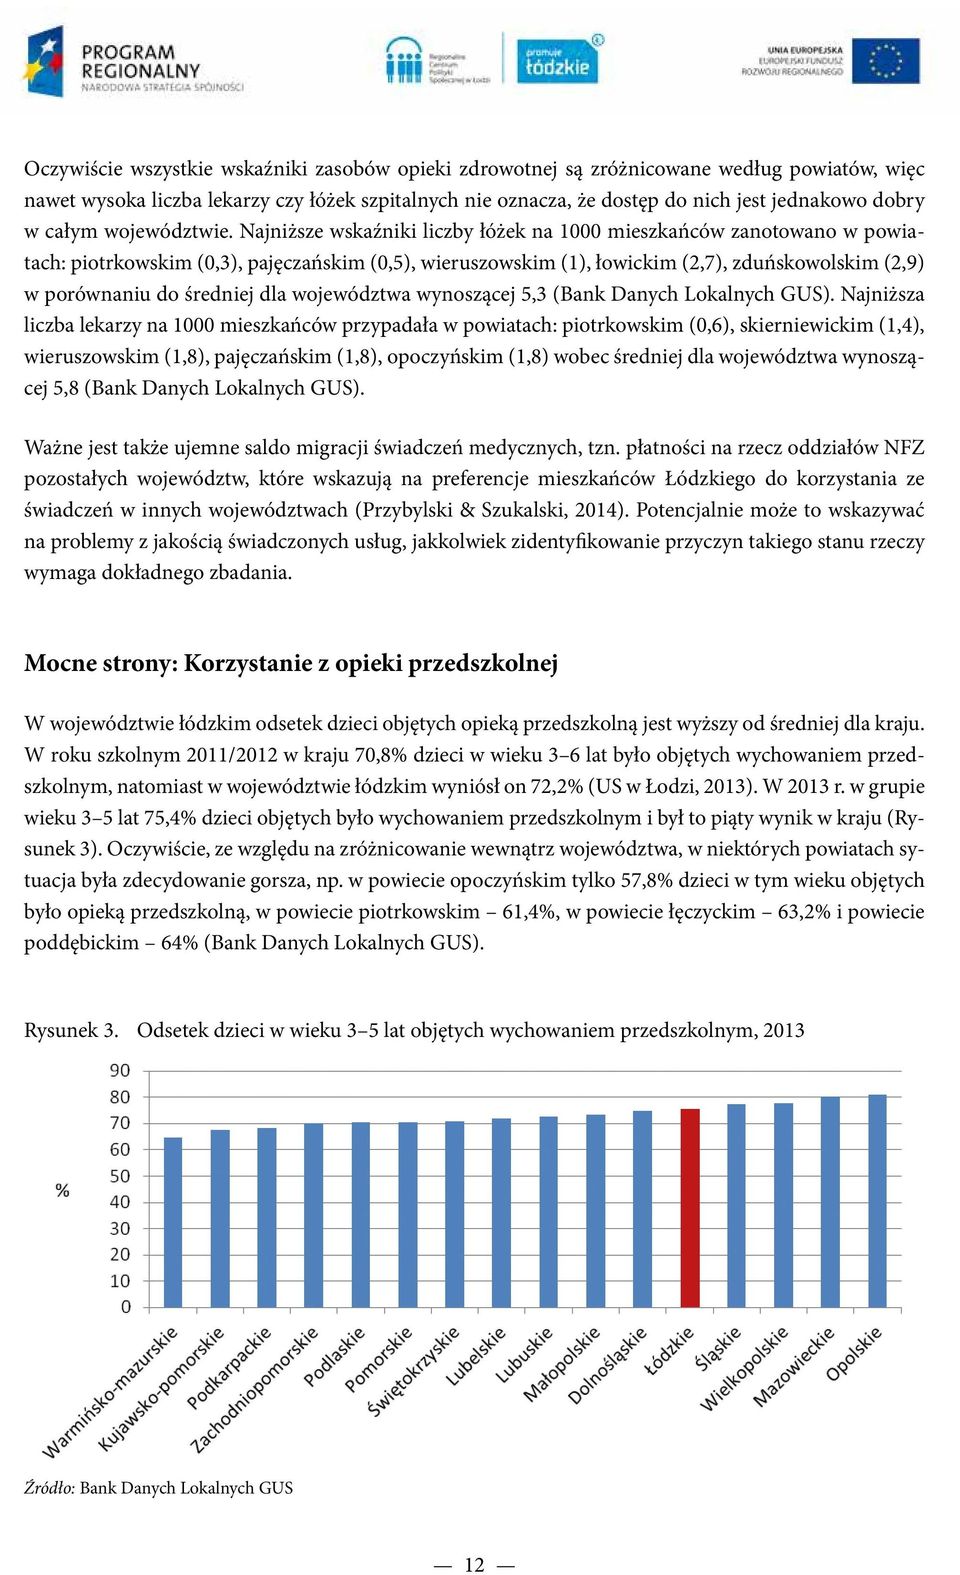 Najniższe wskaźniki liczby łóżek na 1000 mieszkańców zanotowano w powiatach: piotrkowskim (0,3), pajęczańskim (0,5), wieruszowskim (1), łowickim (2,7), zduńskowolskim (2,9) w porównaniu do średniej